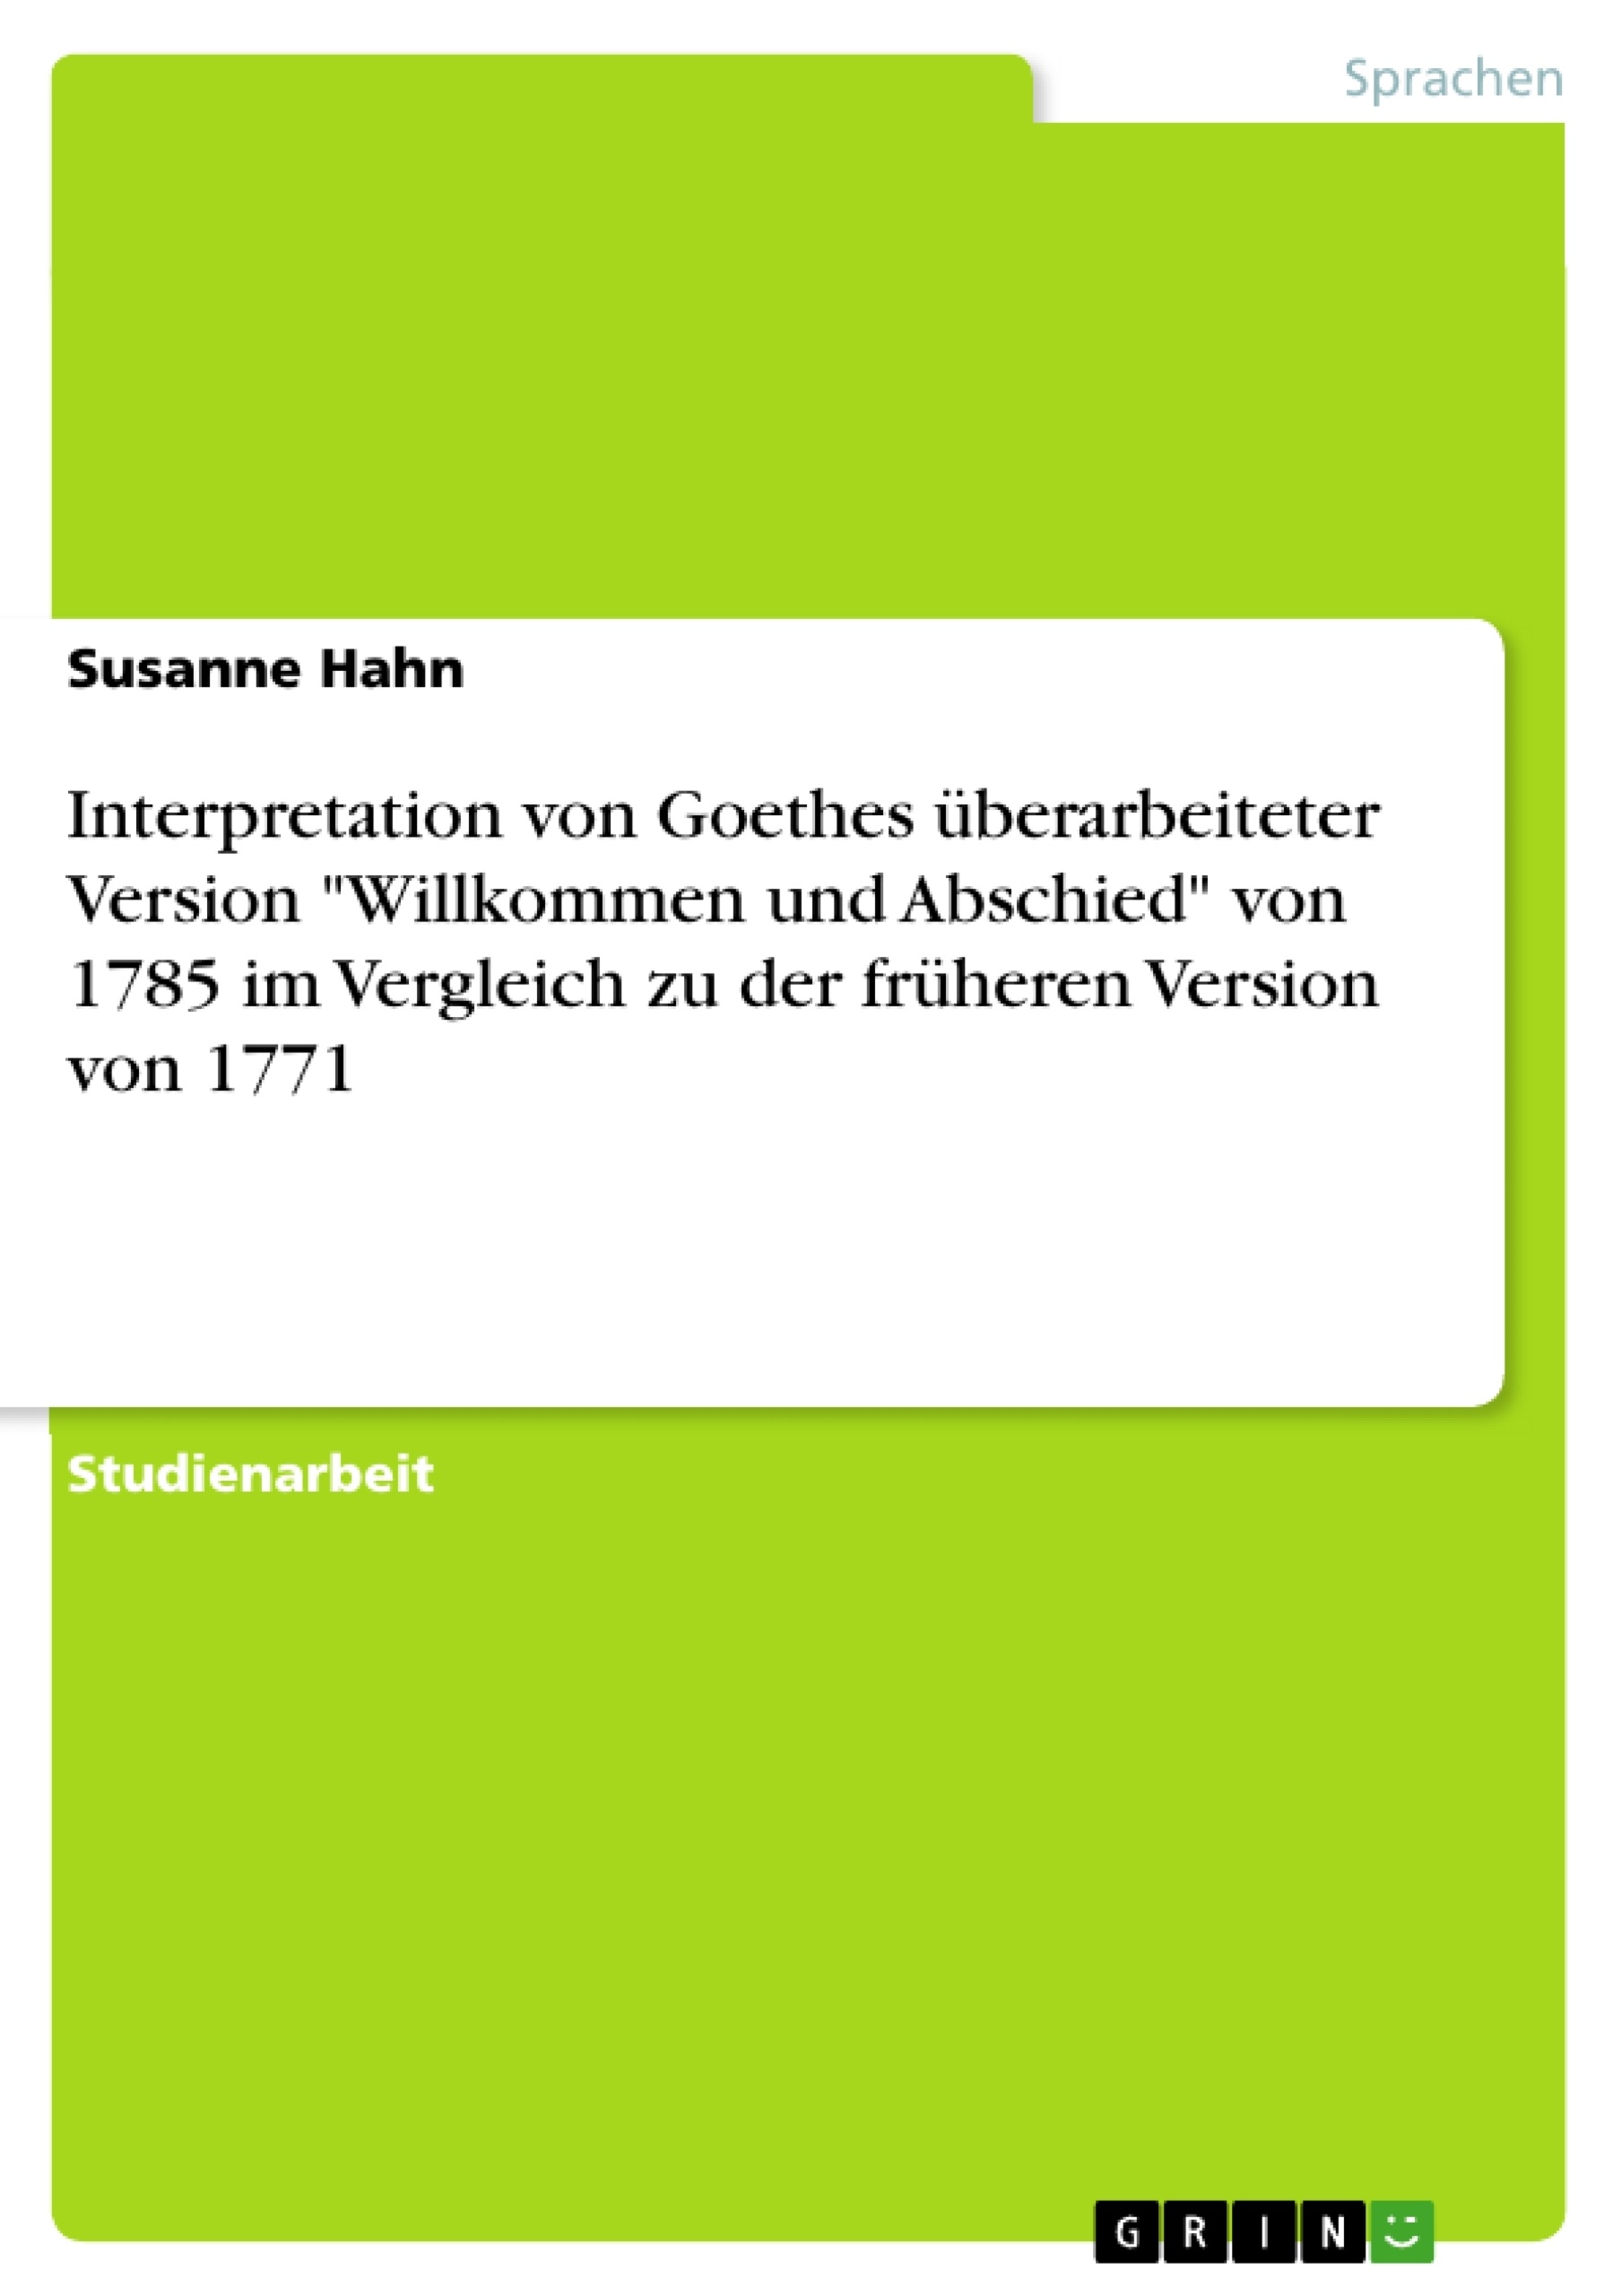 Título: Interpretation von Goethes überarbeiteter Version "Willkommen und Abschied" von 1785 im Vergleich zu der früheren Version von 1771